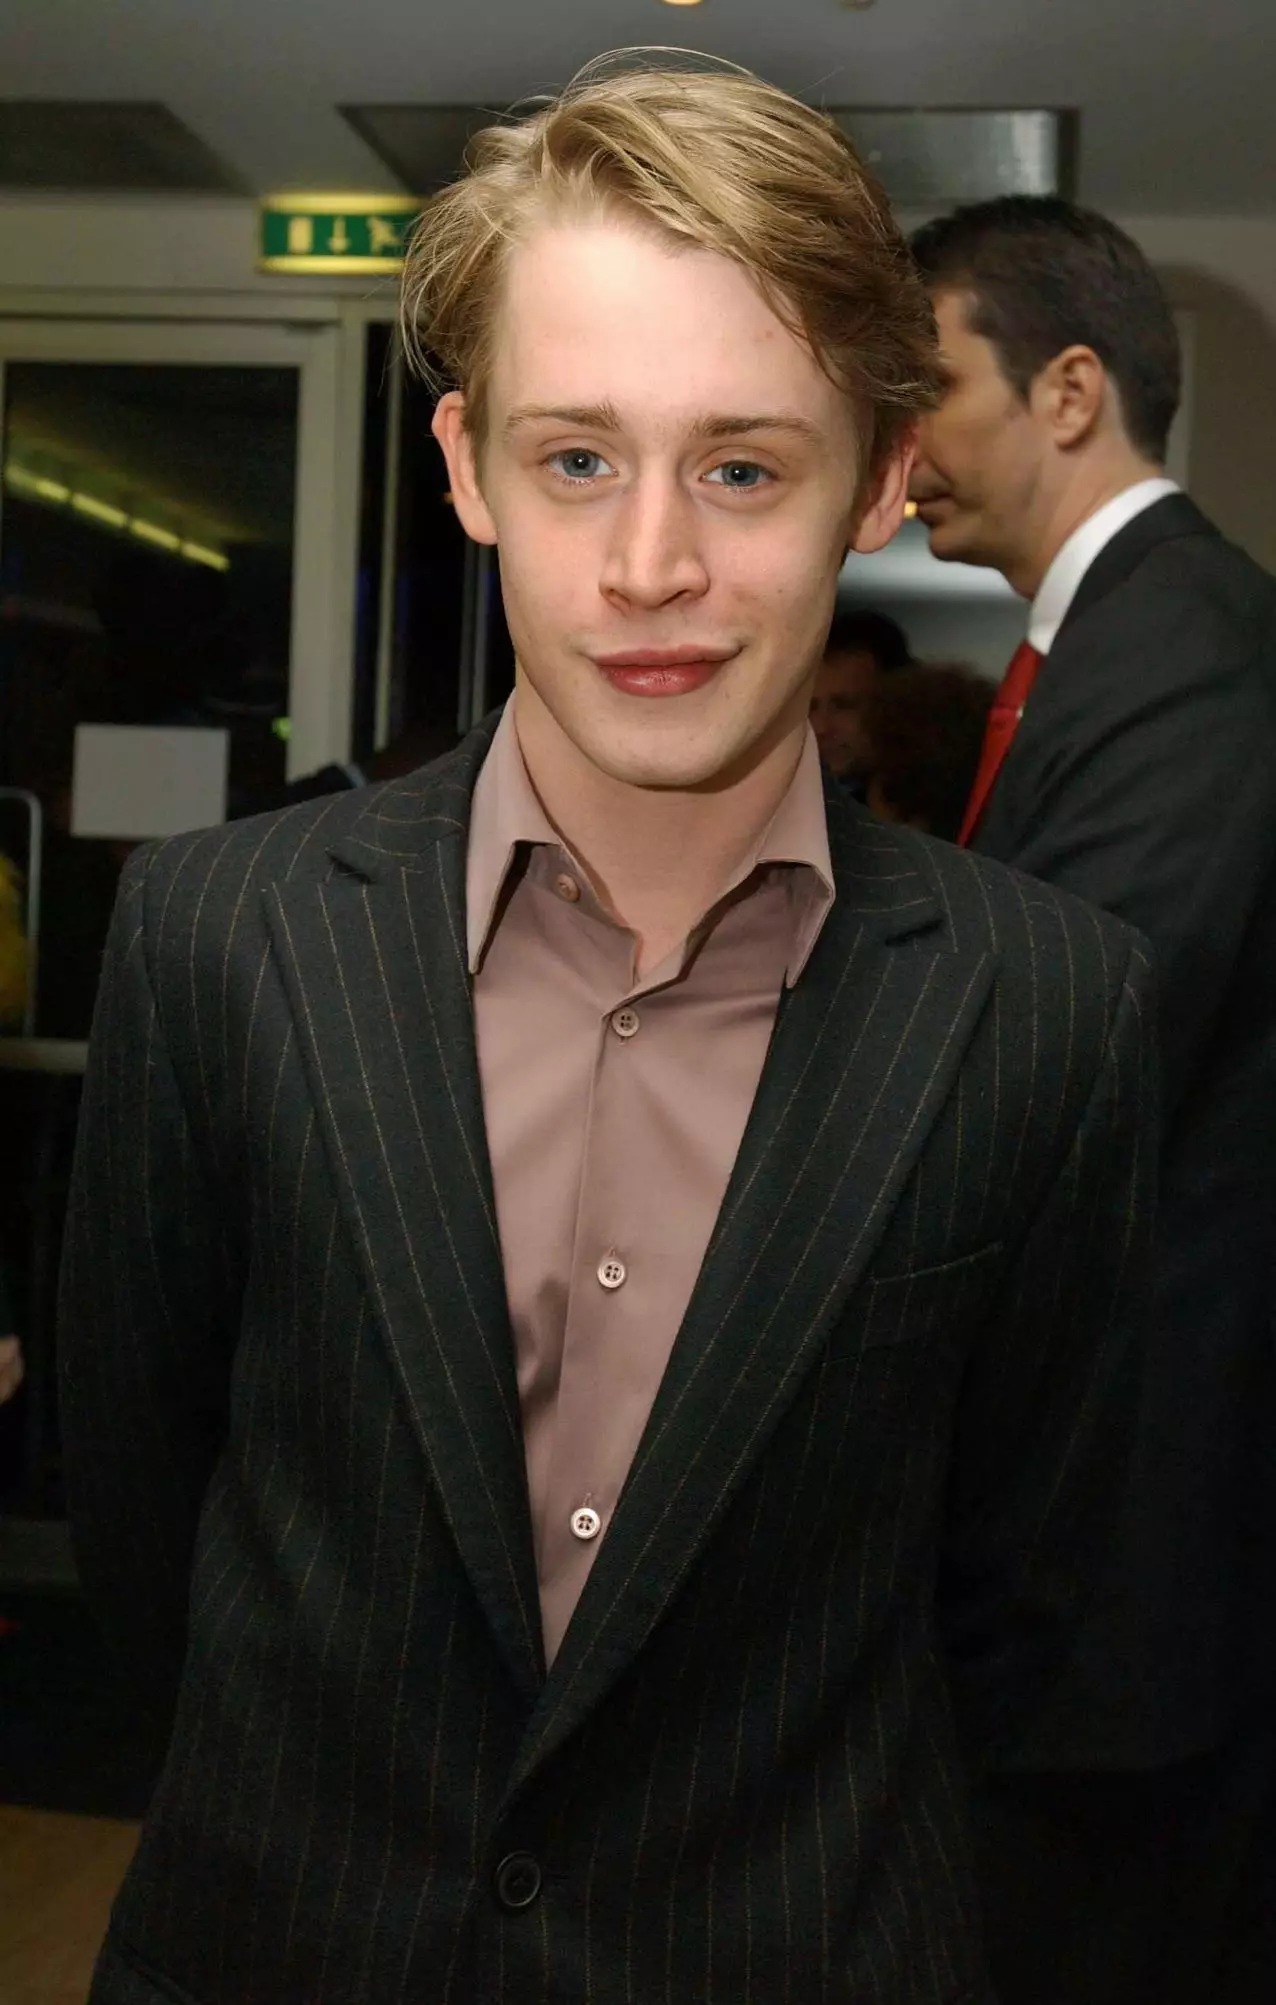 Macaulay Culkin in 2002 (